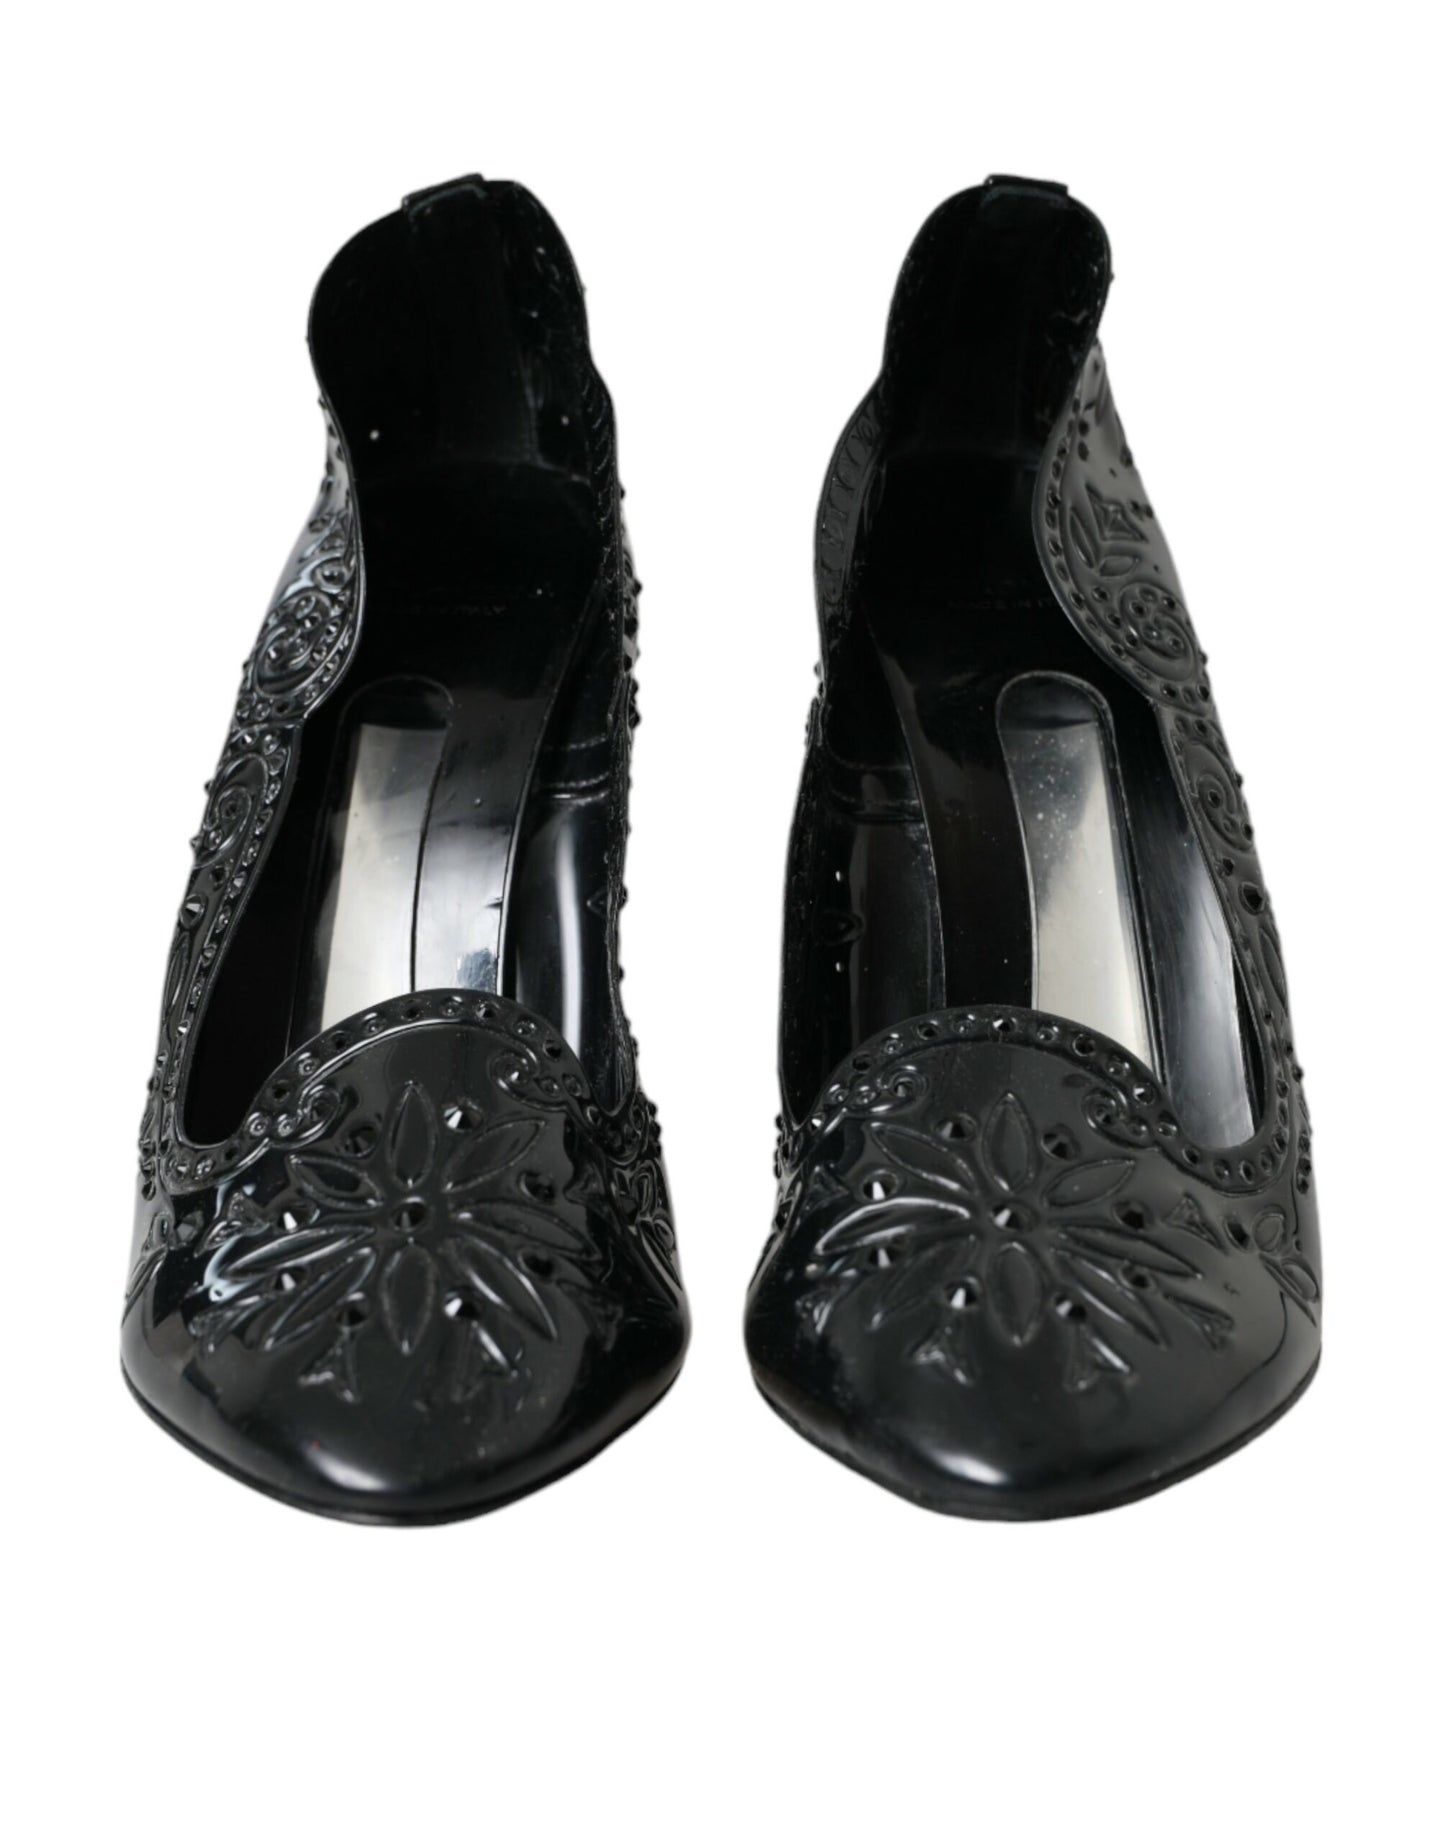 Black Crystal CINDERELLA Heels Pumps Shoes